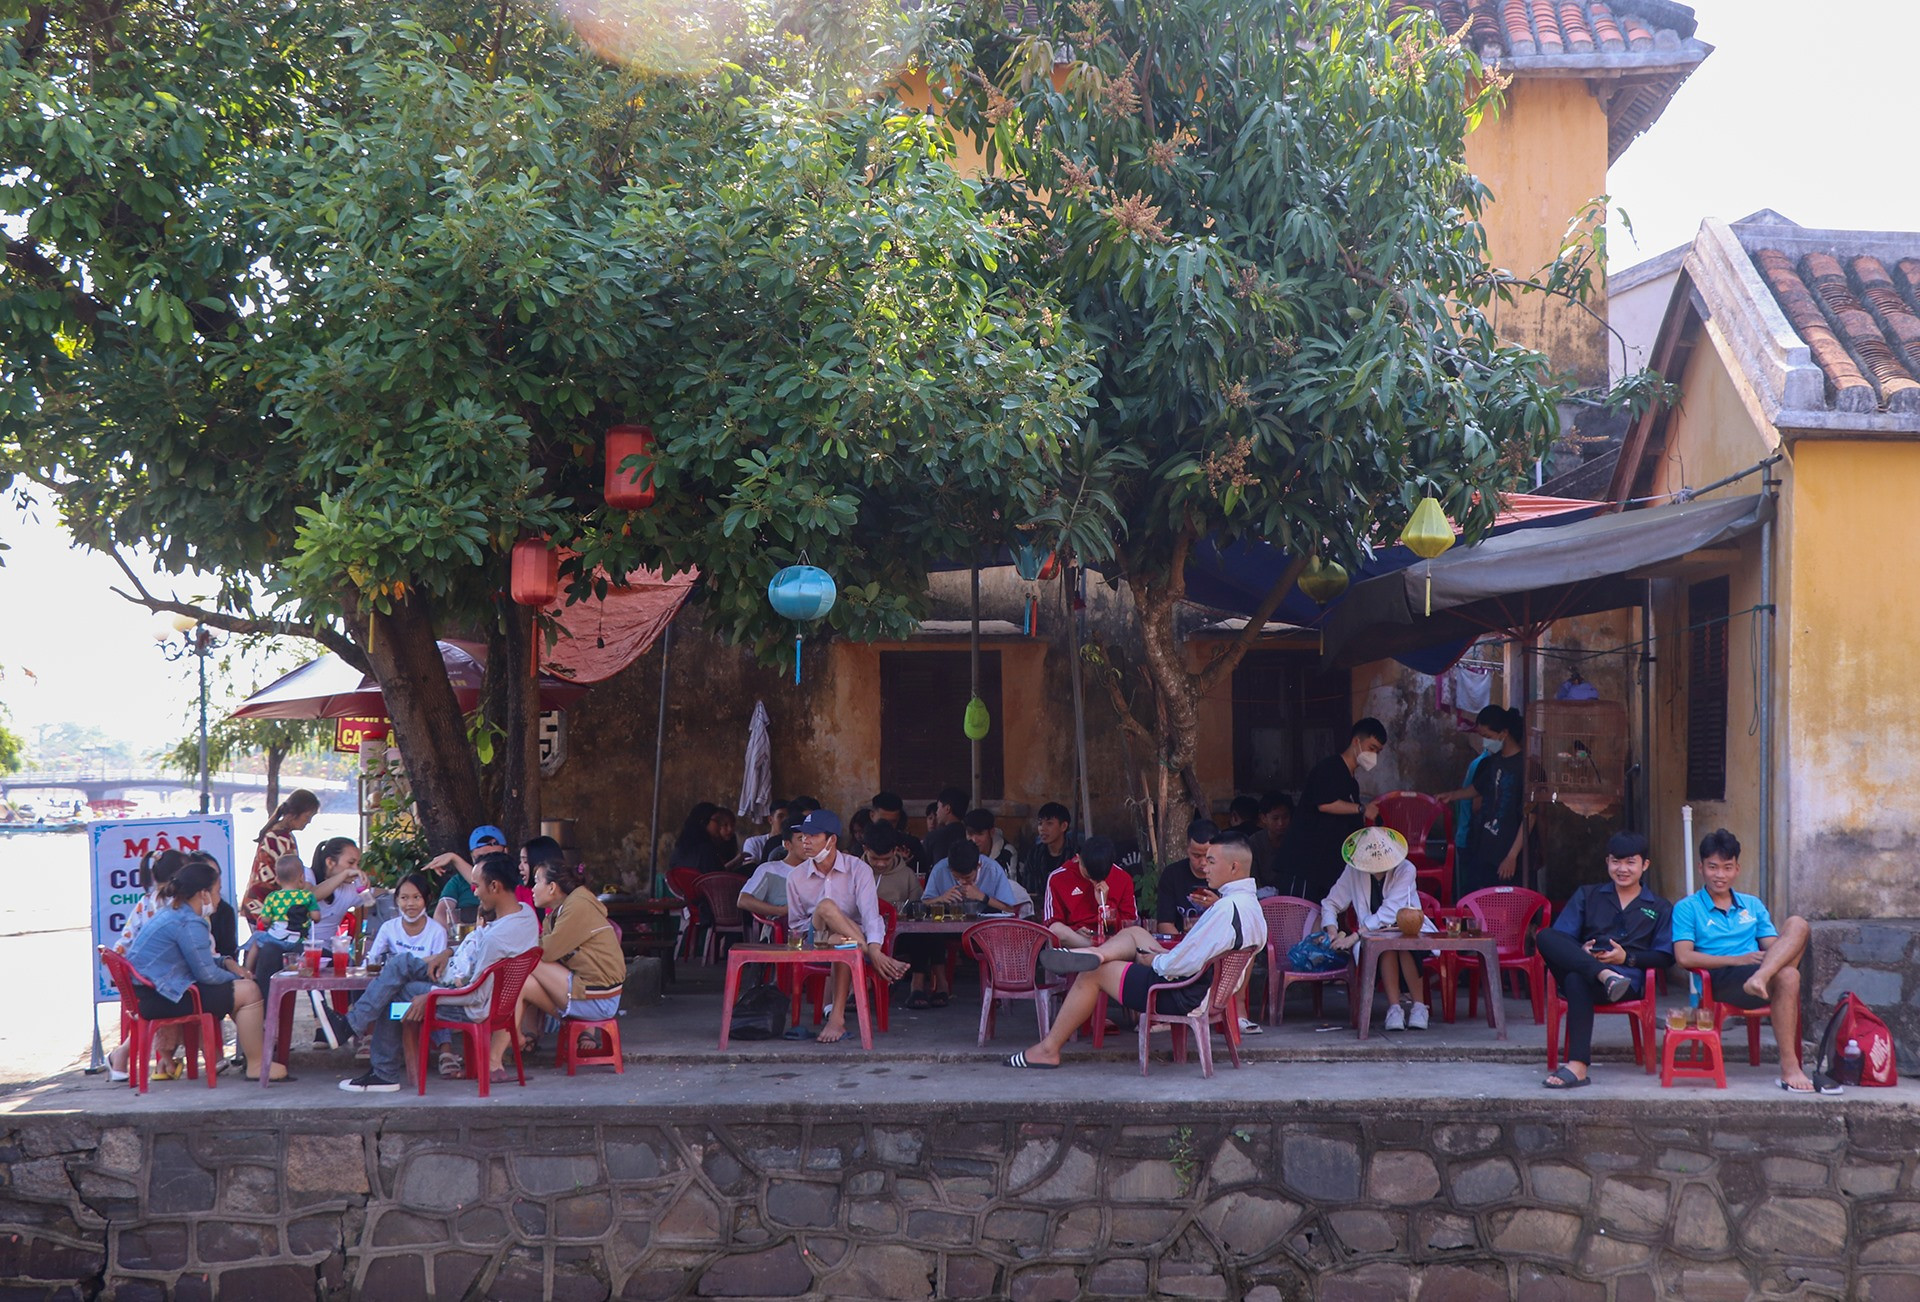 Các quán cà phê, ẩm thực tại phố cổ Hội An trong tình trạng kín khách. Chị Huyền, một hộ kinh doanh cà phê gần chùa Cầu, cho hay từ chiều thứ 6, lượng khách đổ về Hội An đông nên quán chị luôn trong tình trạng kín bàn, ghế.